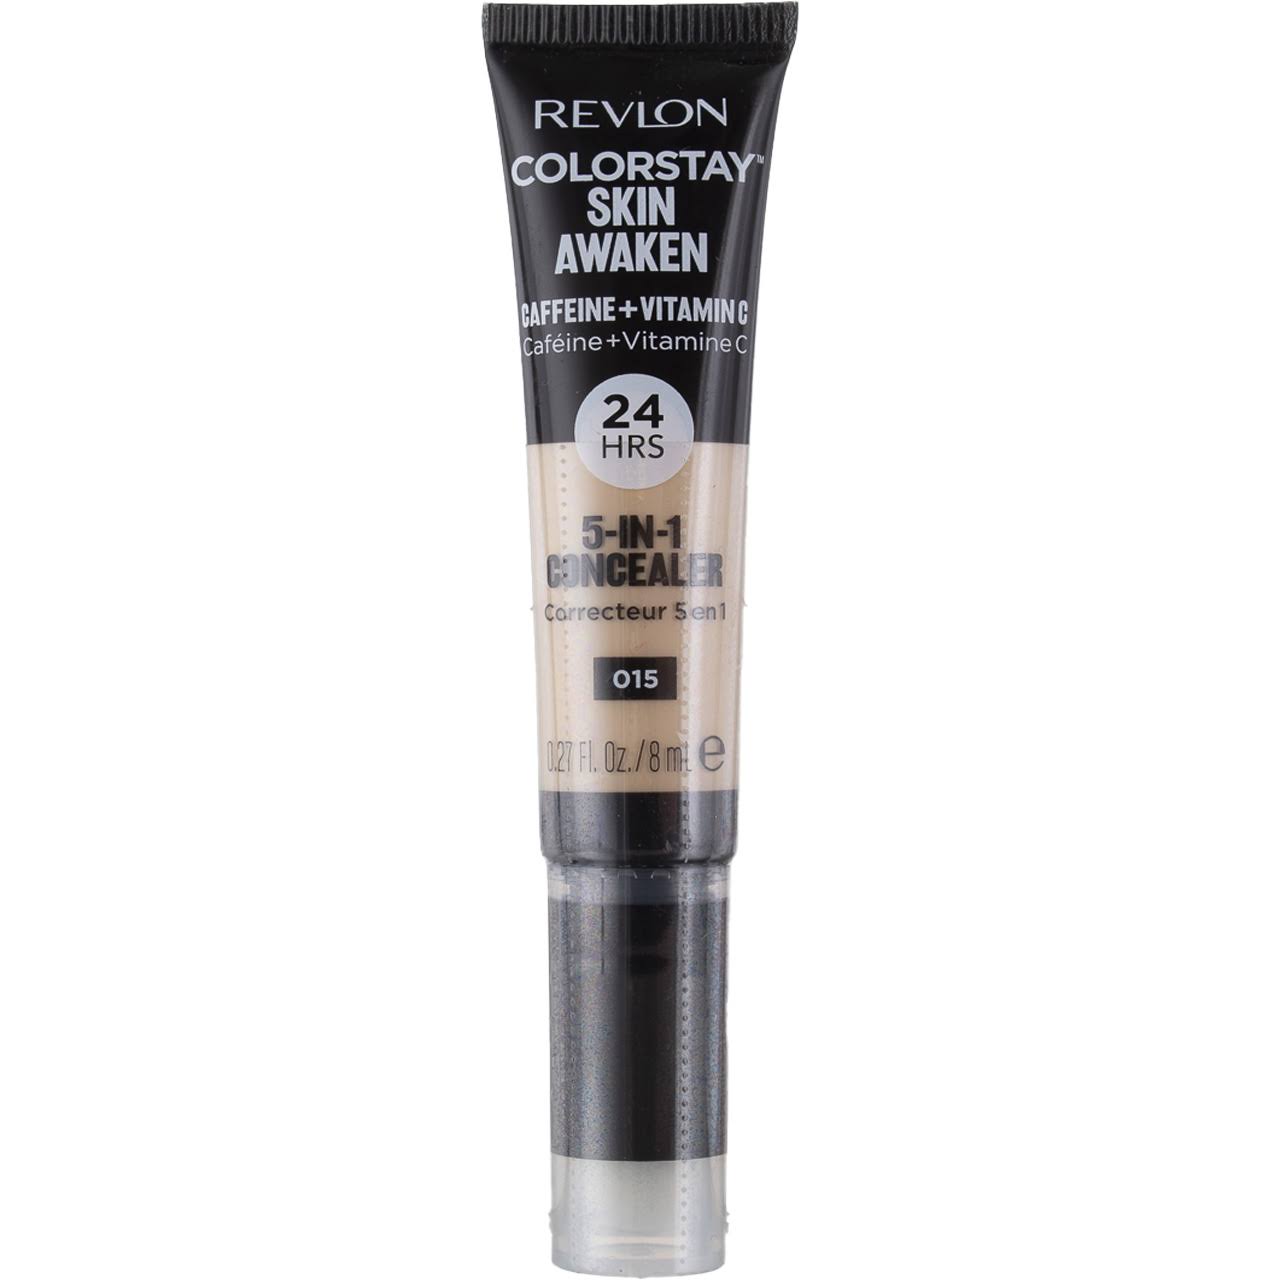 Revlon ColorStay Skin Awaken Concealer, 015 Light, 0.27 fl oz